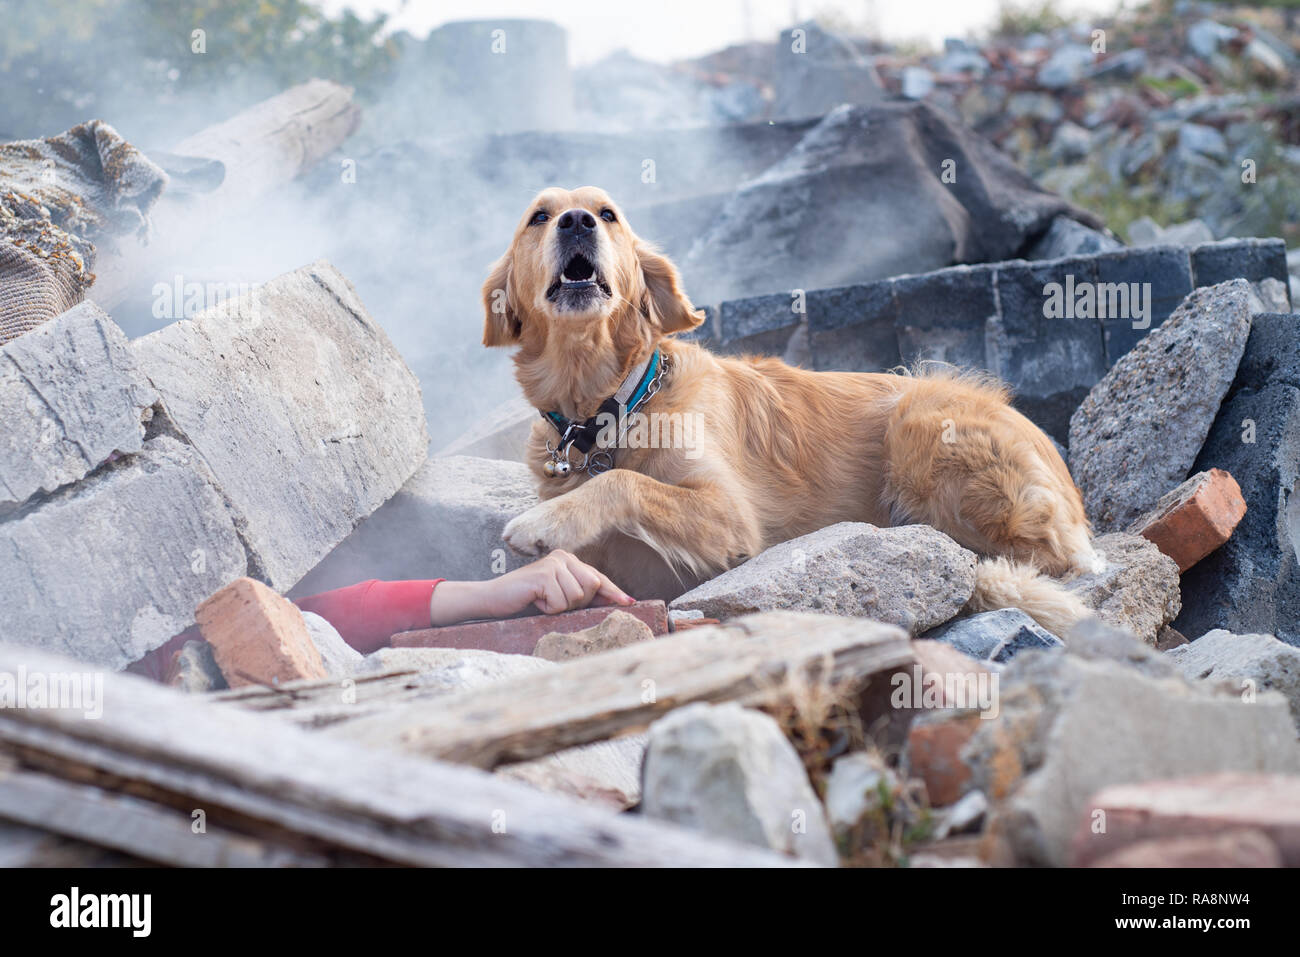 Hund auf der Suche nach verletzten Personen in Trümmern nach Erdbeben  Stockfotografie - Alamy